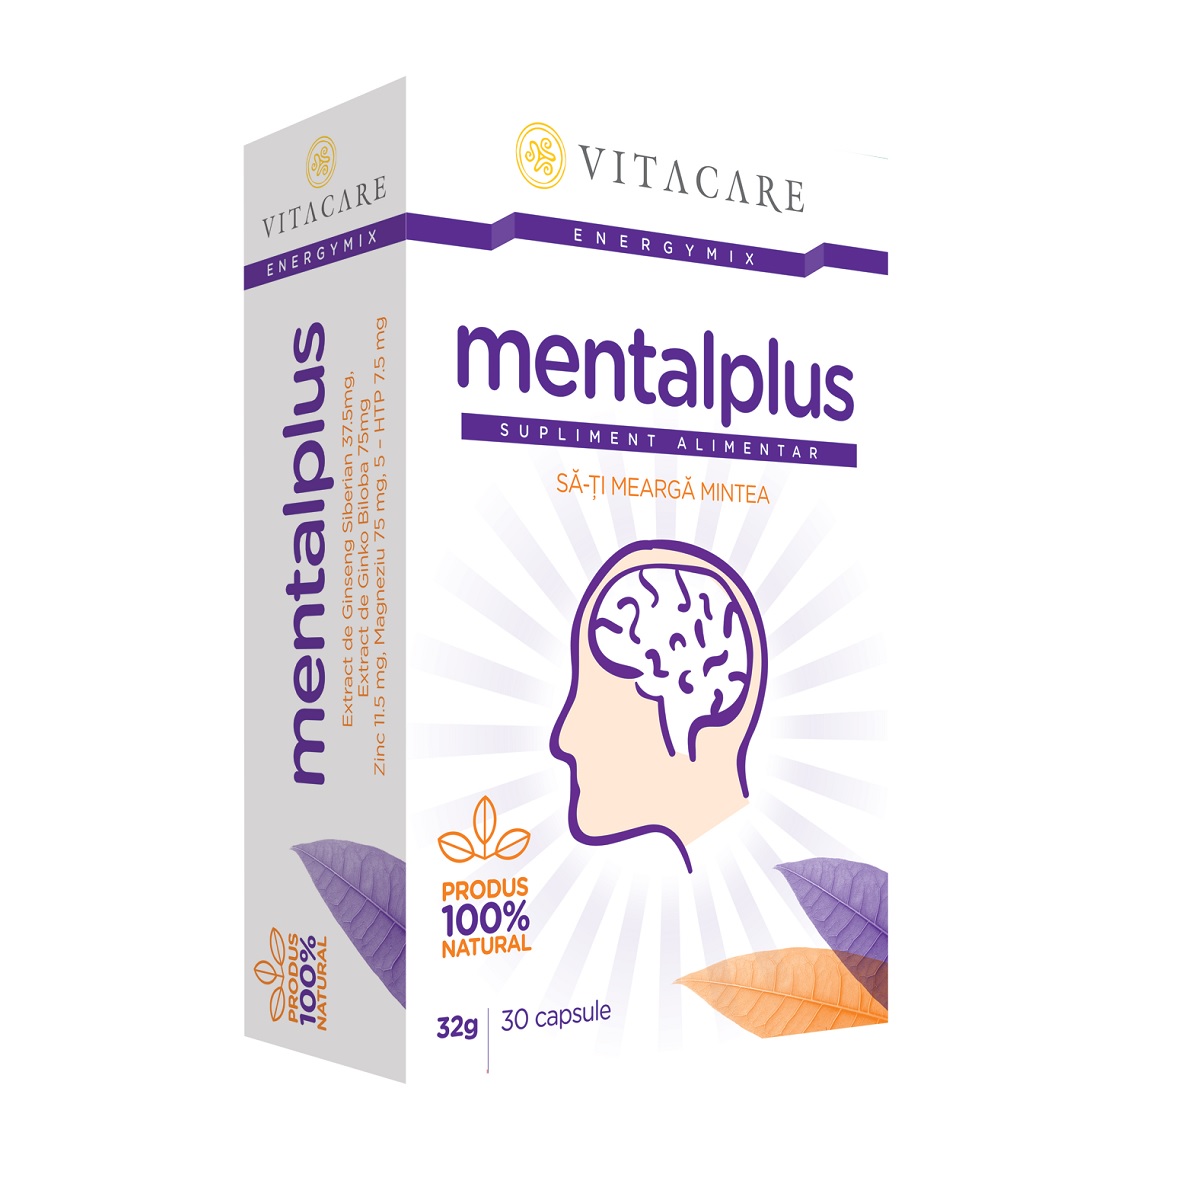 Mentalplus, 30 capsule, Vitacare